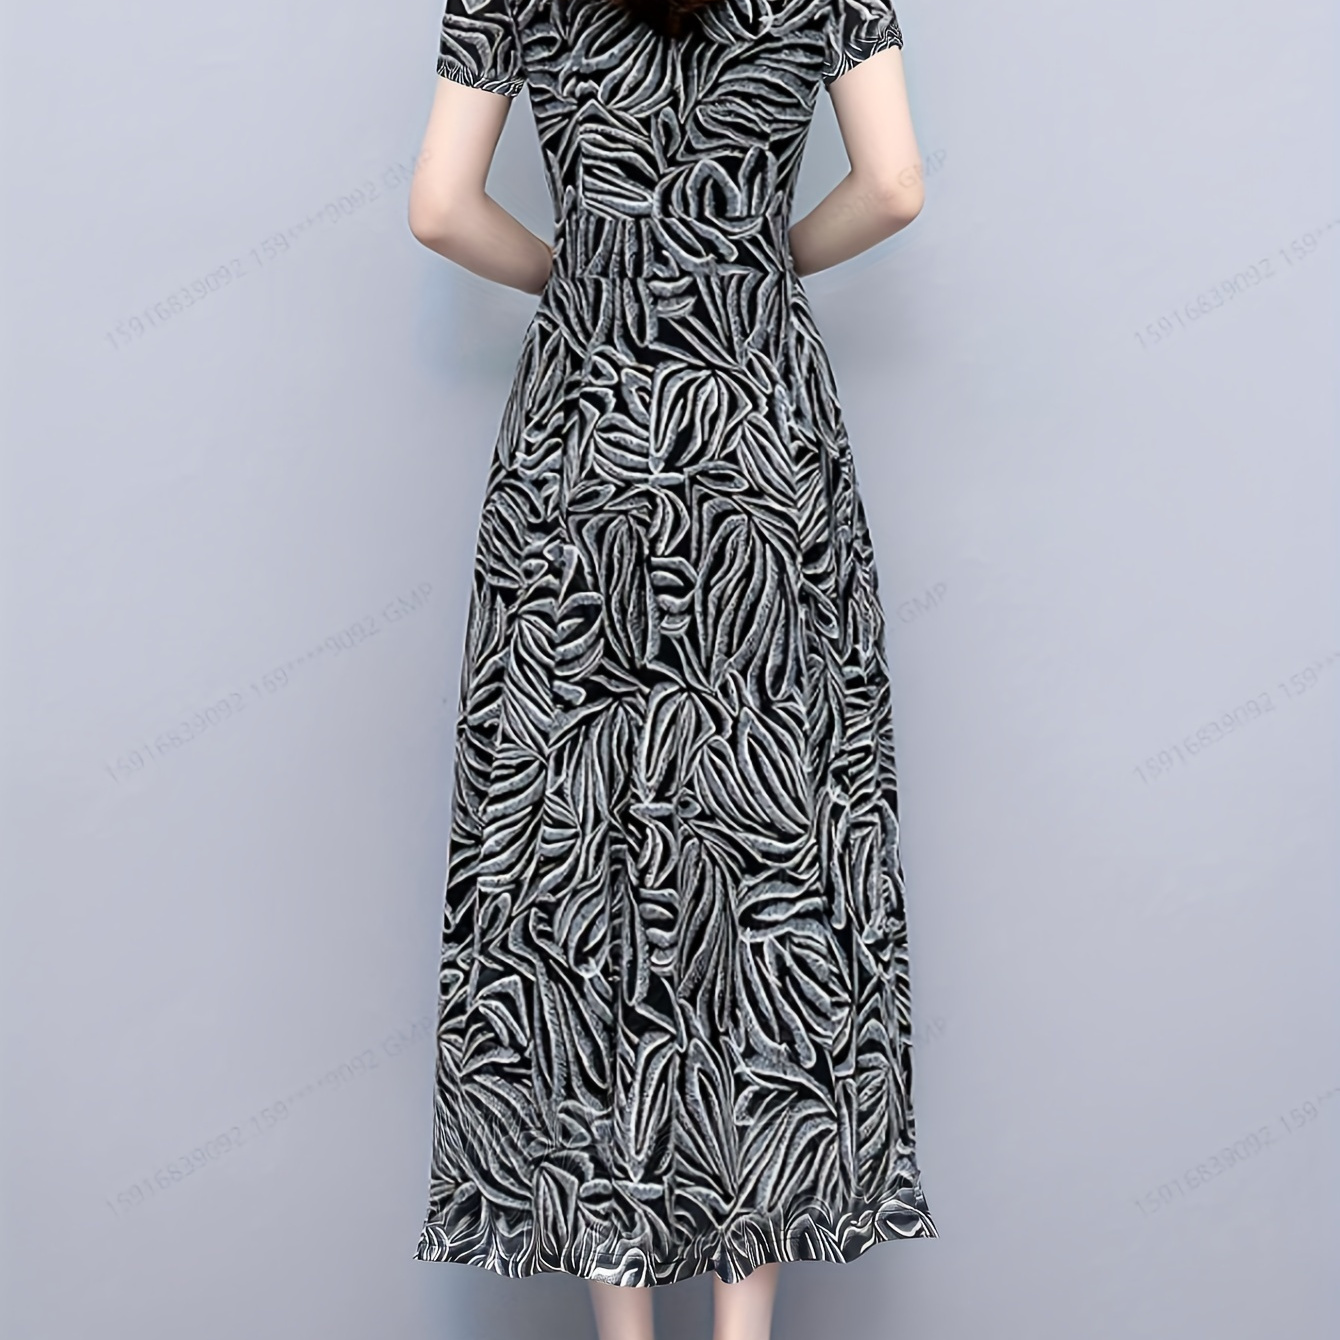 

Allover Print V Neck Dress, Elegant Short Sleeve Dress For Spring & Summer, Women's Clothing